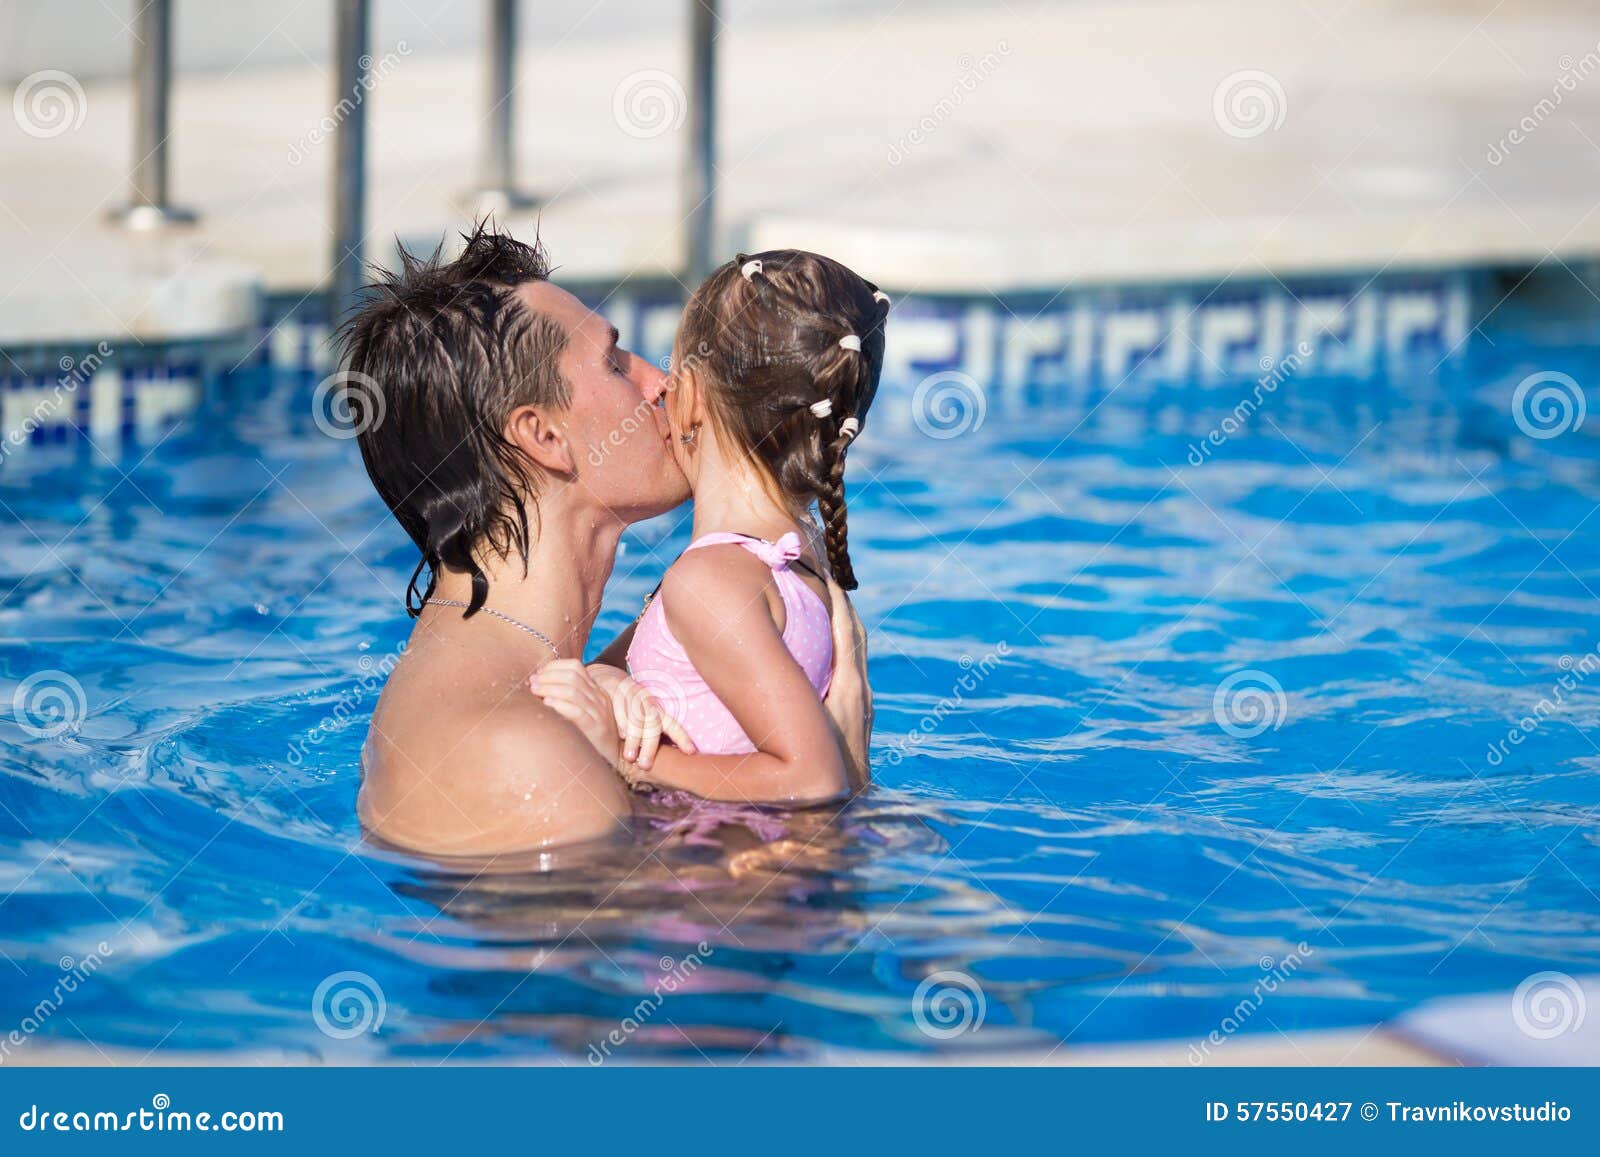 Папа купает дочку. Девушка с дочкой в бассейне. Дочь купается в бассейне. Девочки с папами в бассейне. Отец с дочкой в бассейне.